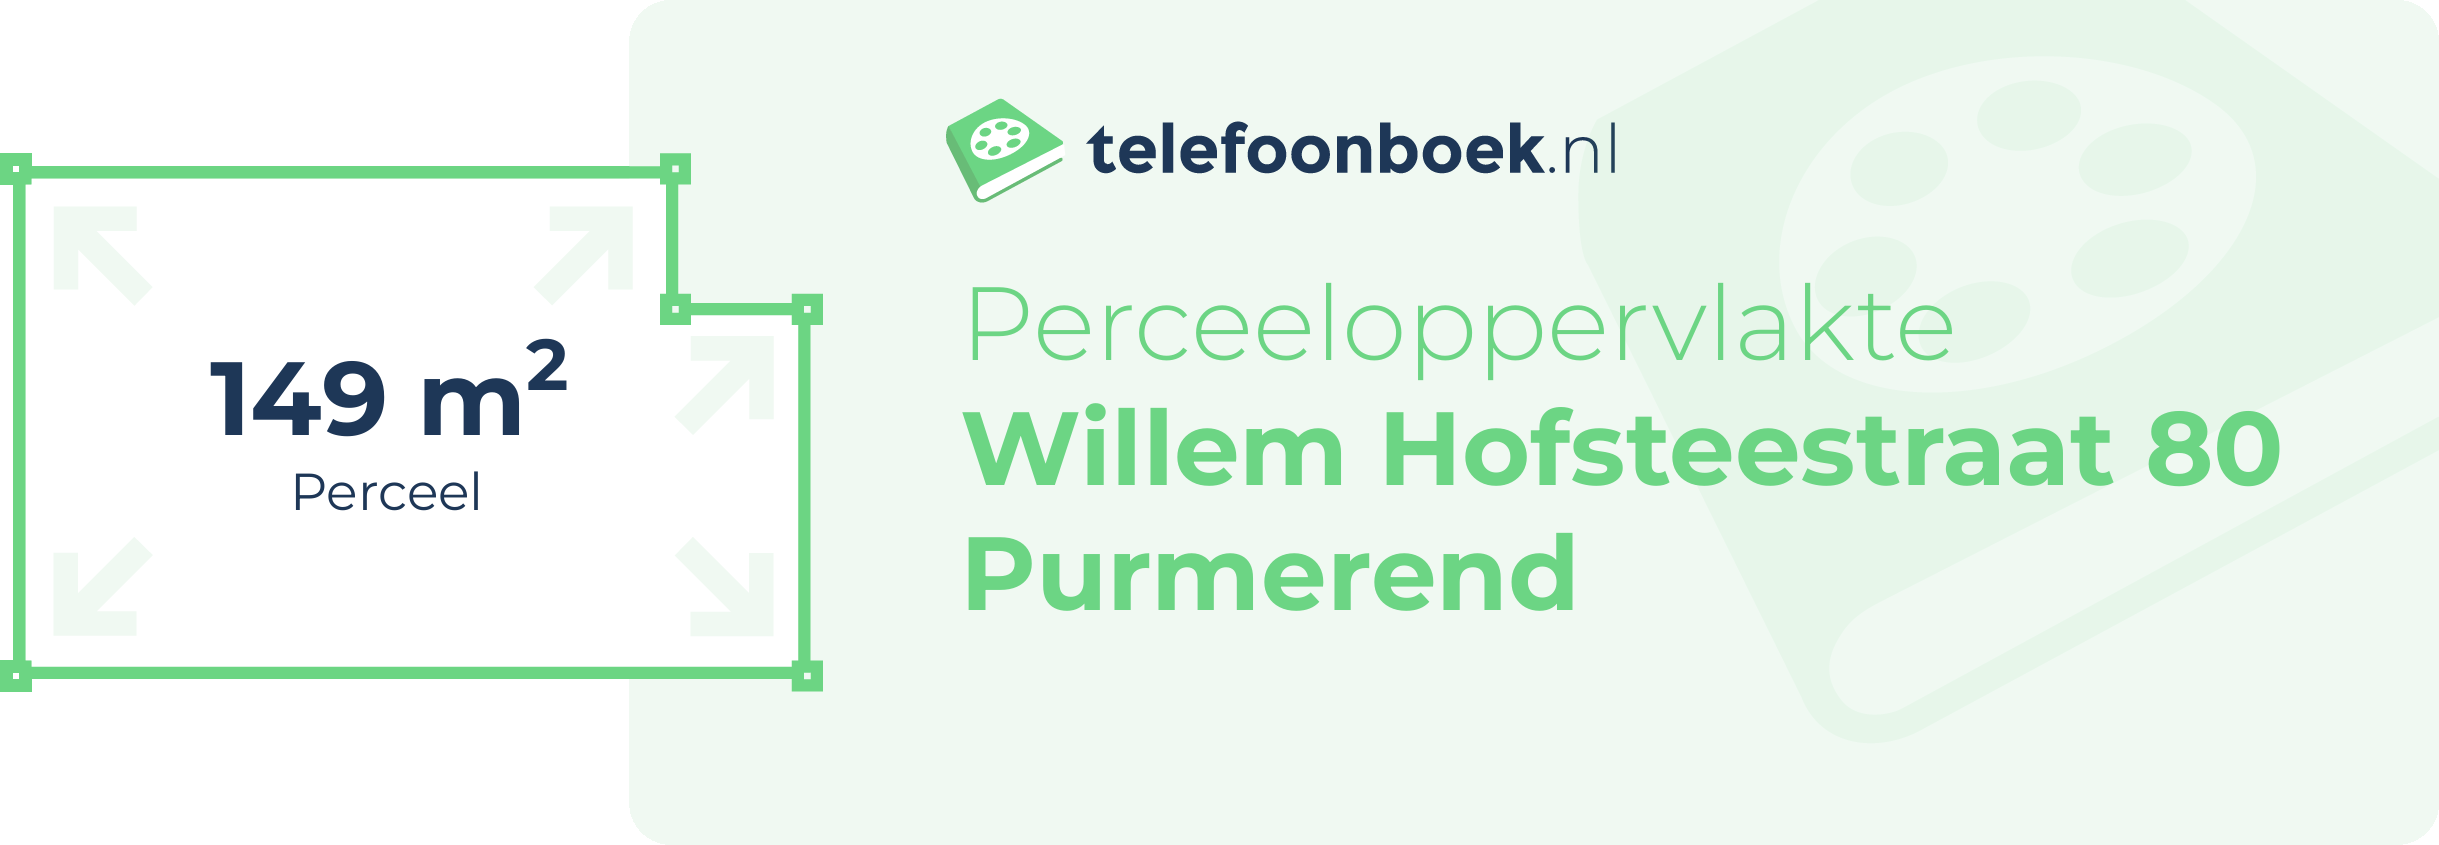 Perceeloppervlakte Willem Hofsteestraat 80 Purmerend